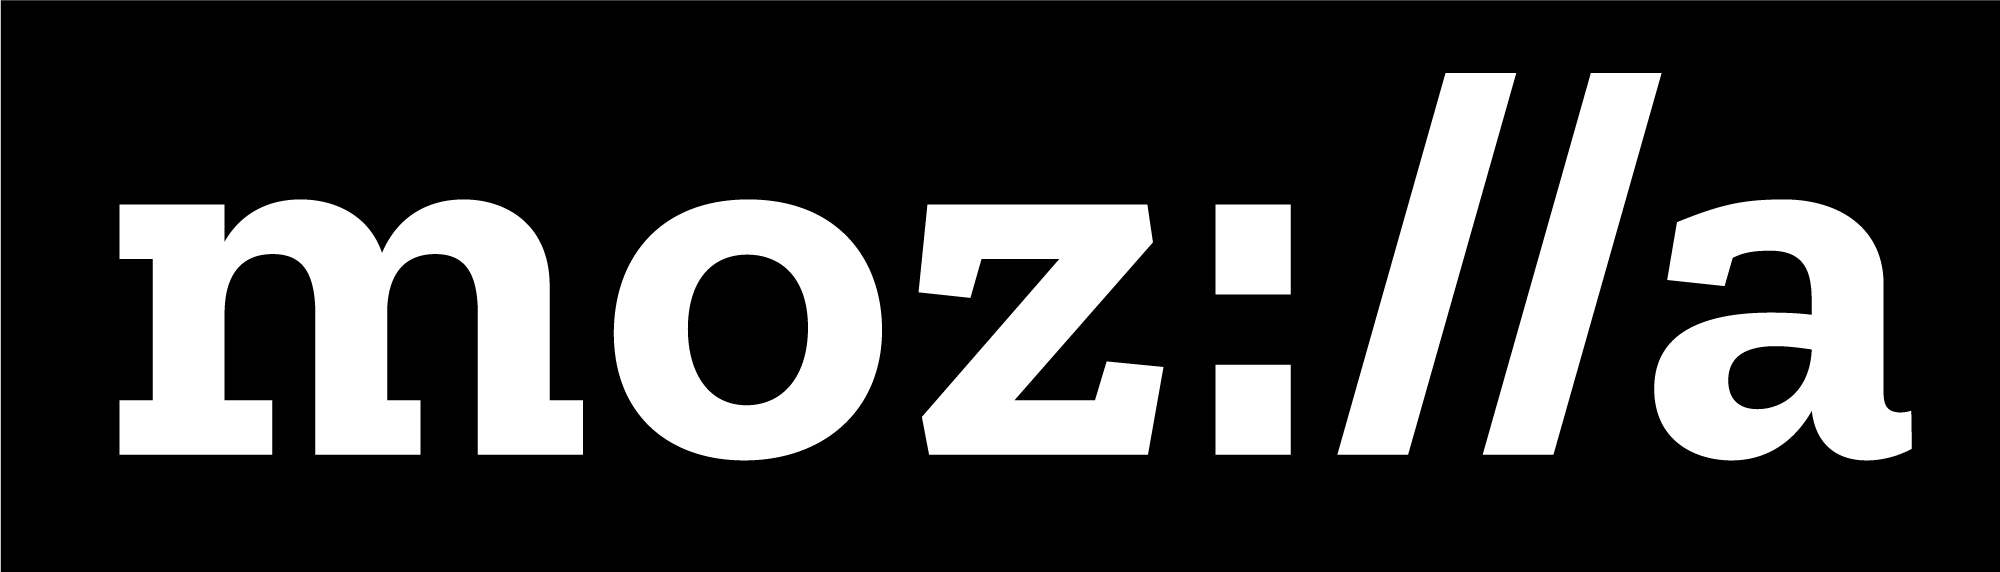 Mozilla-logga